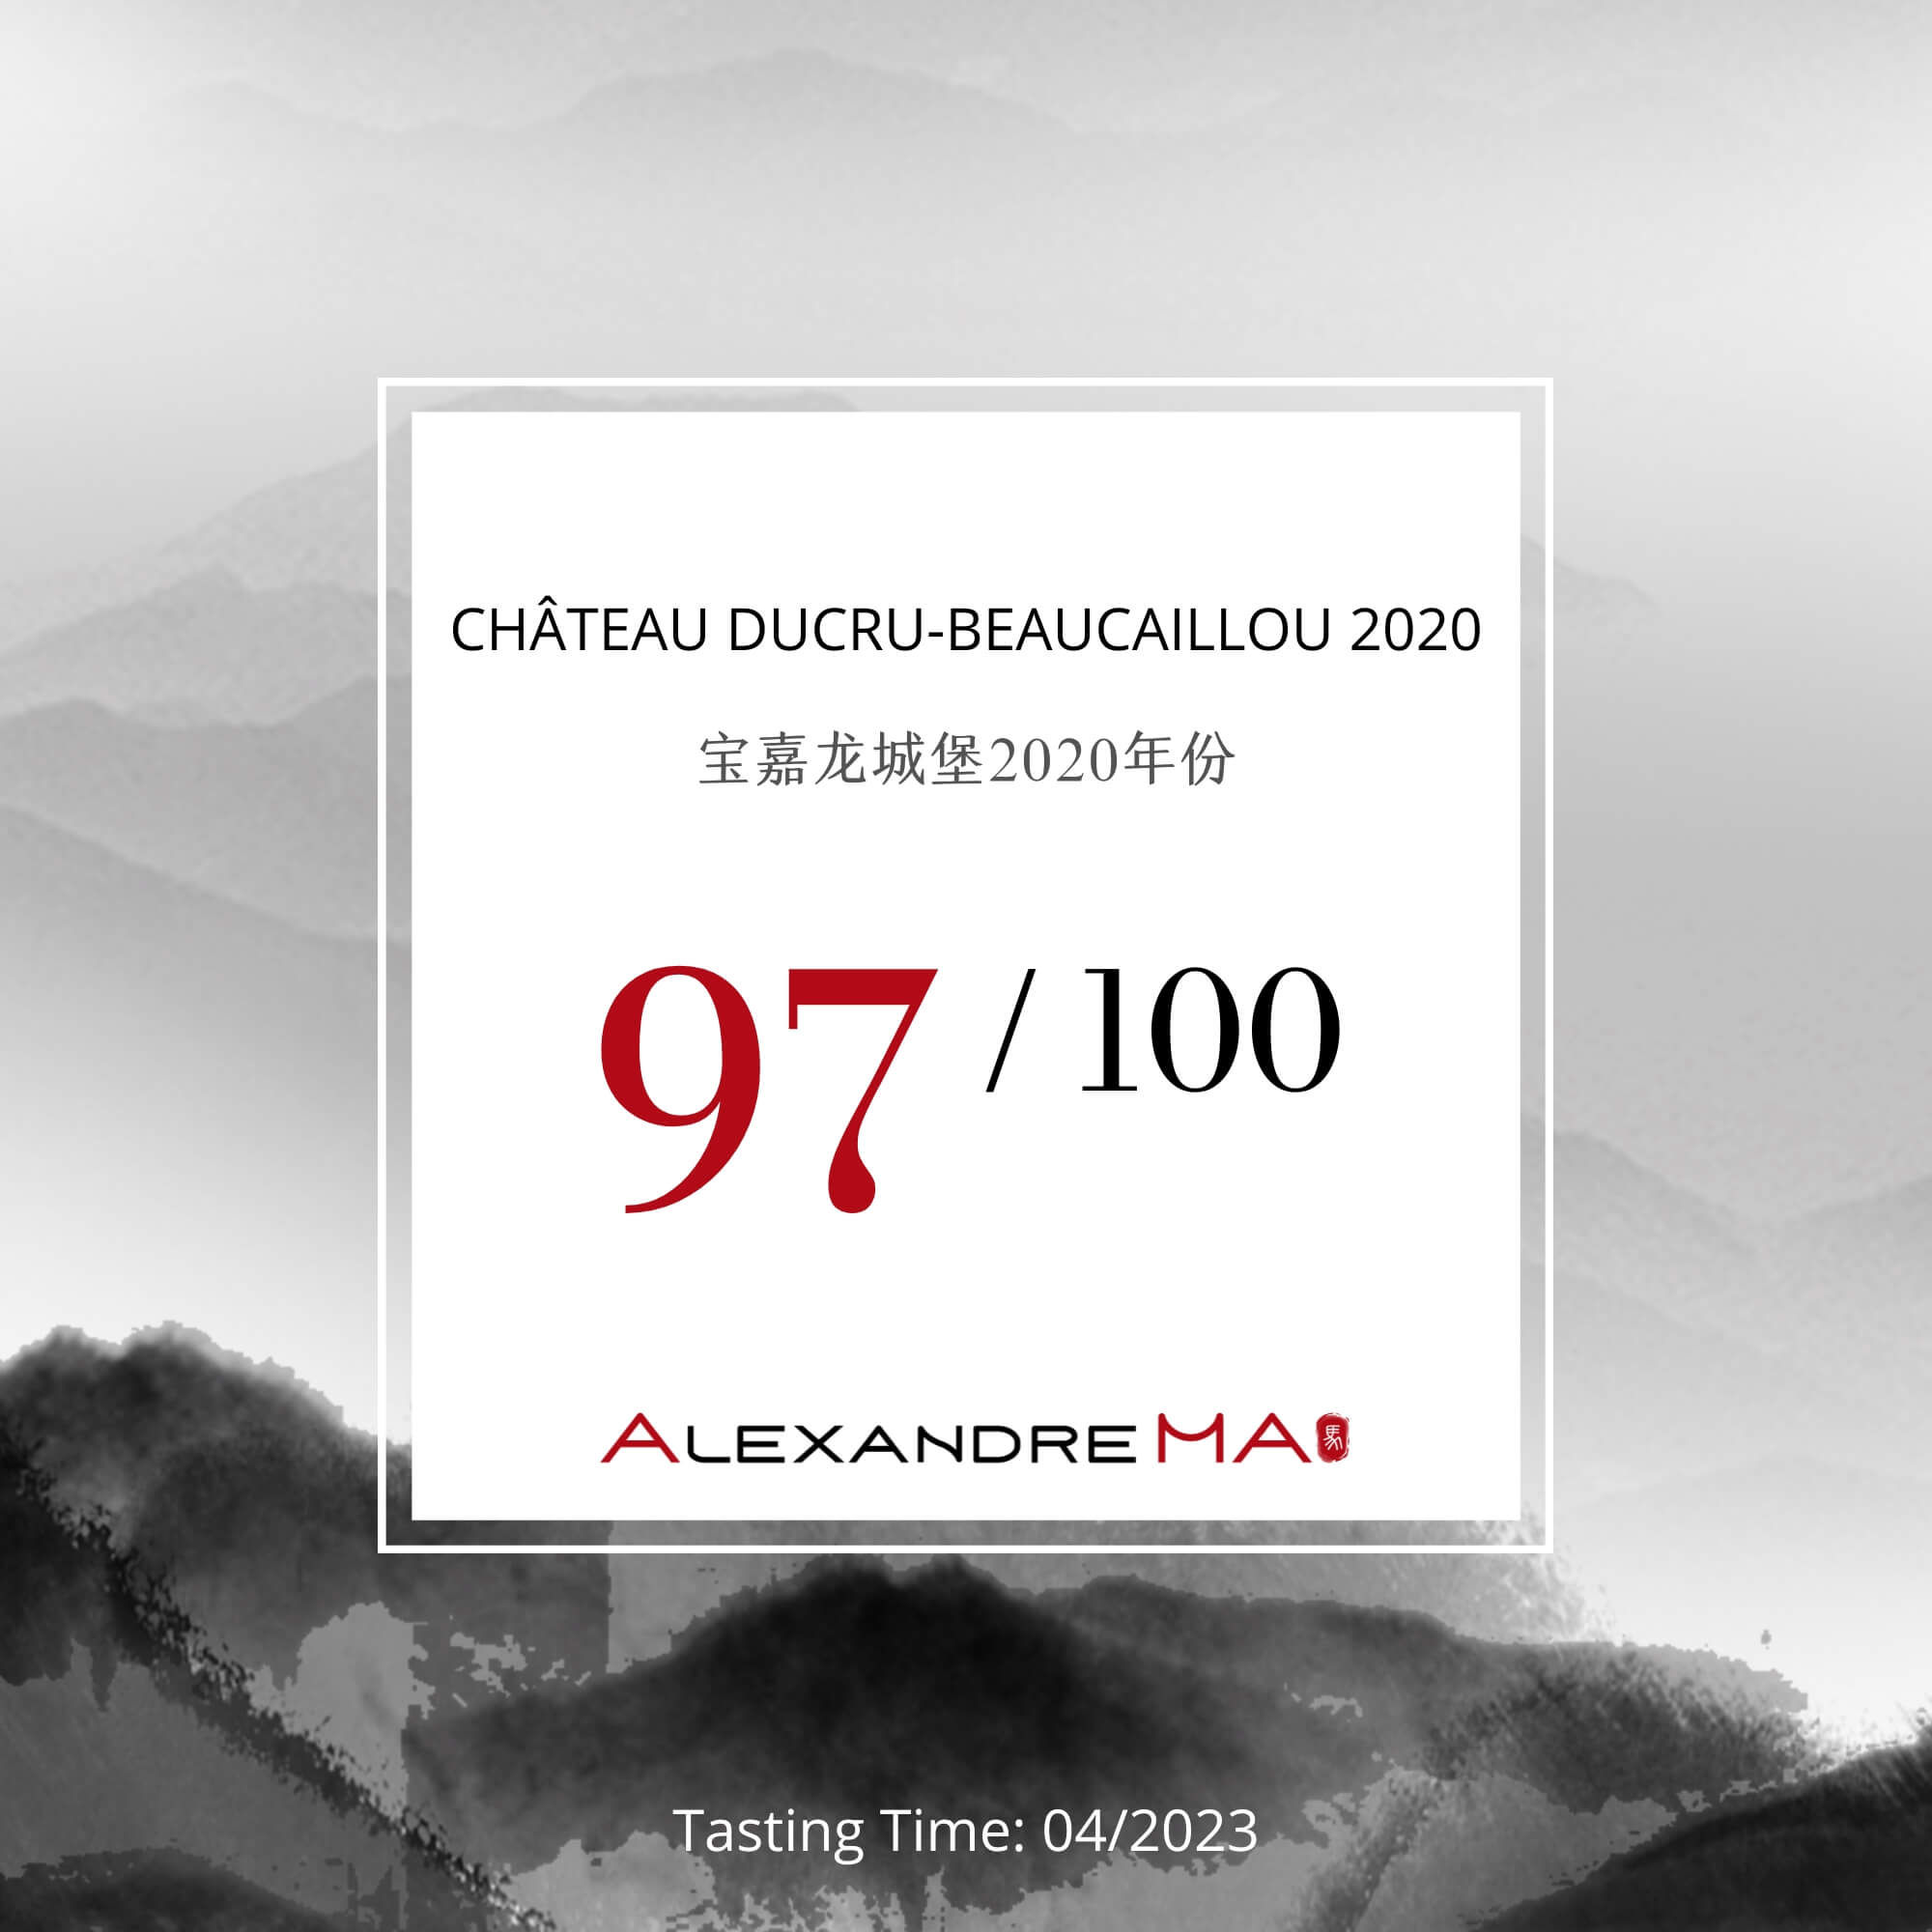 Château Ducru-Beaucaillou 2020 - Alexandre MA